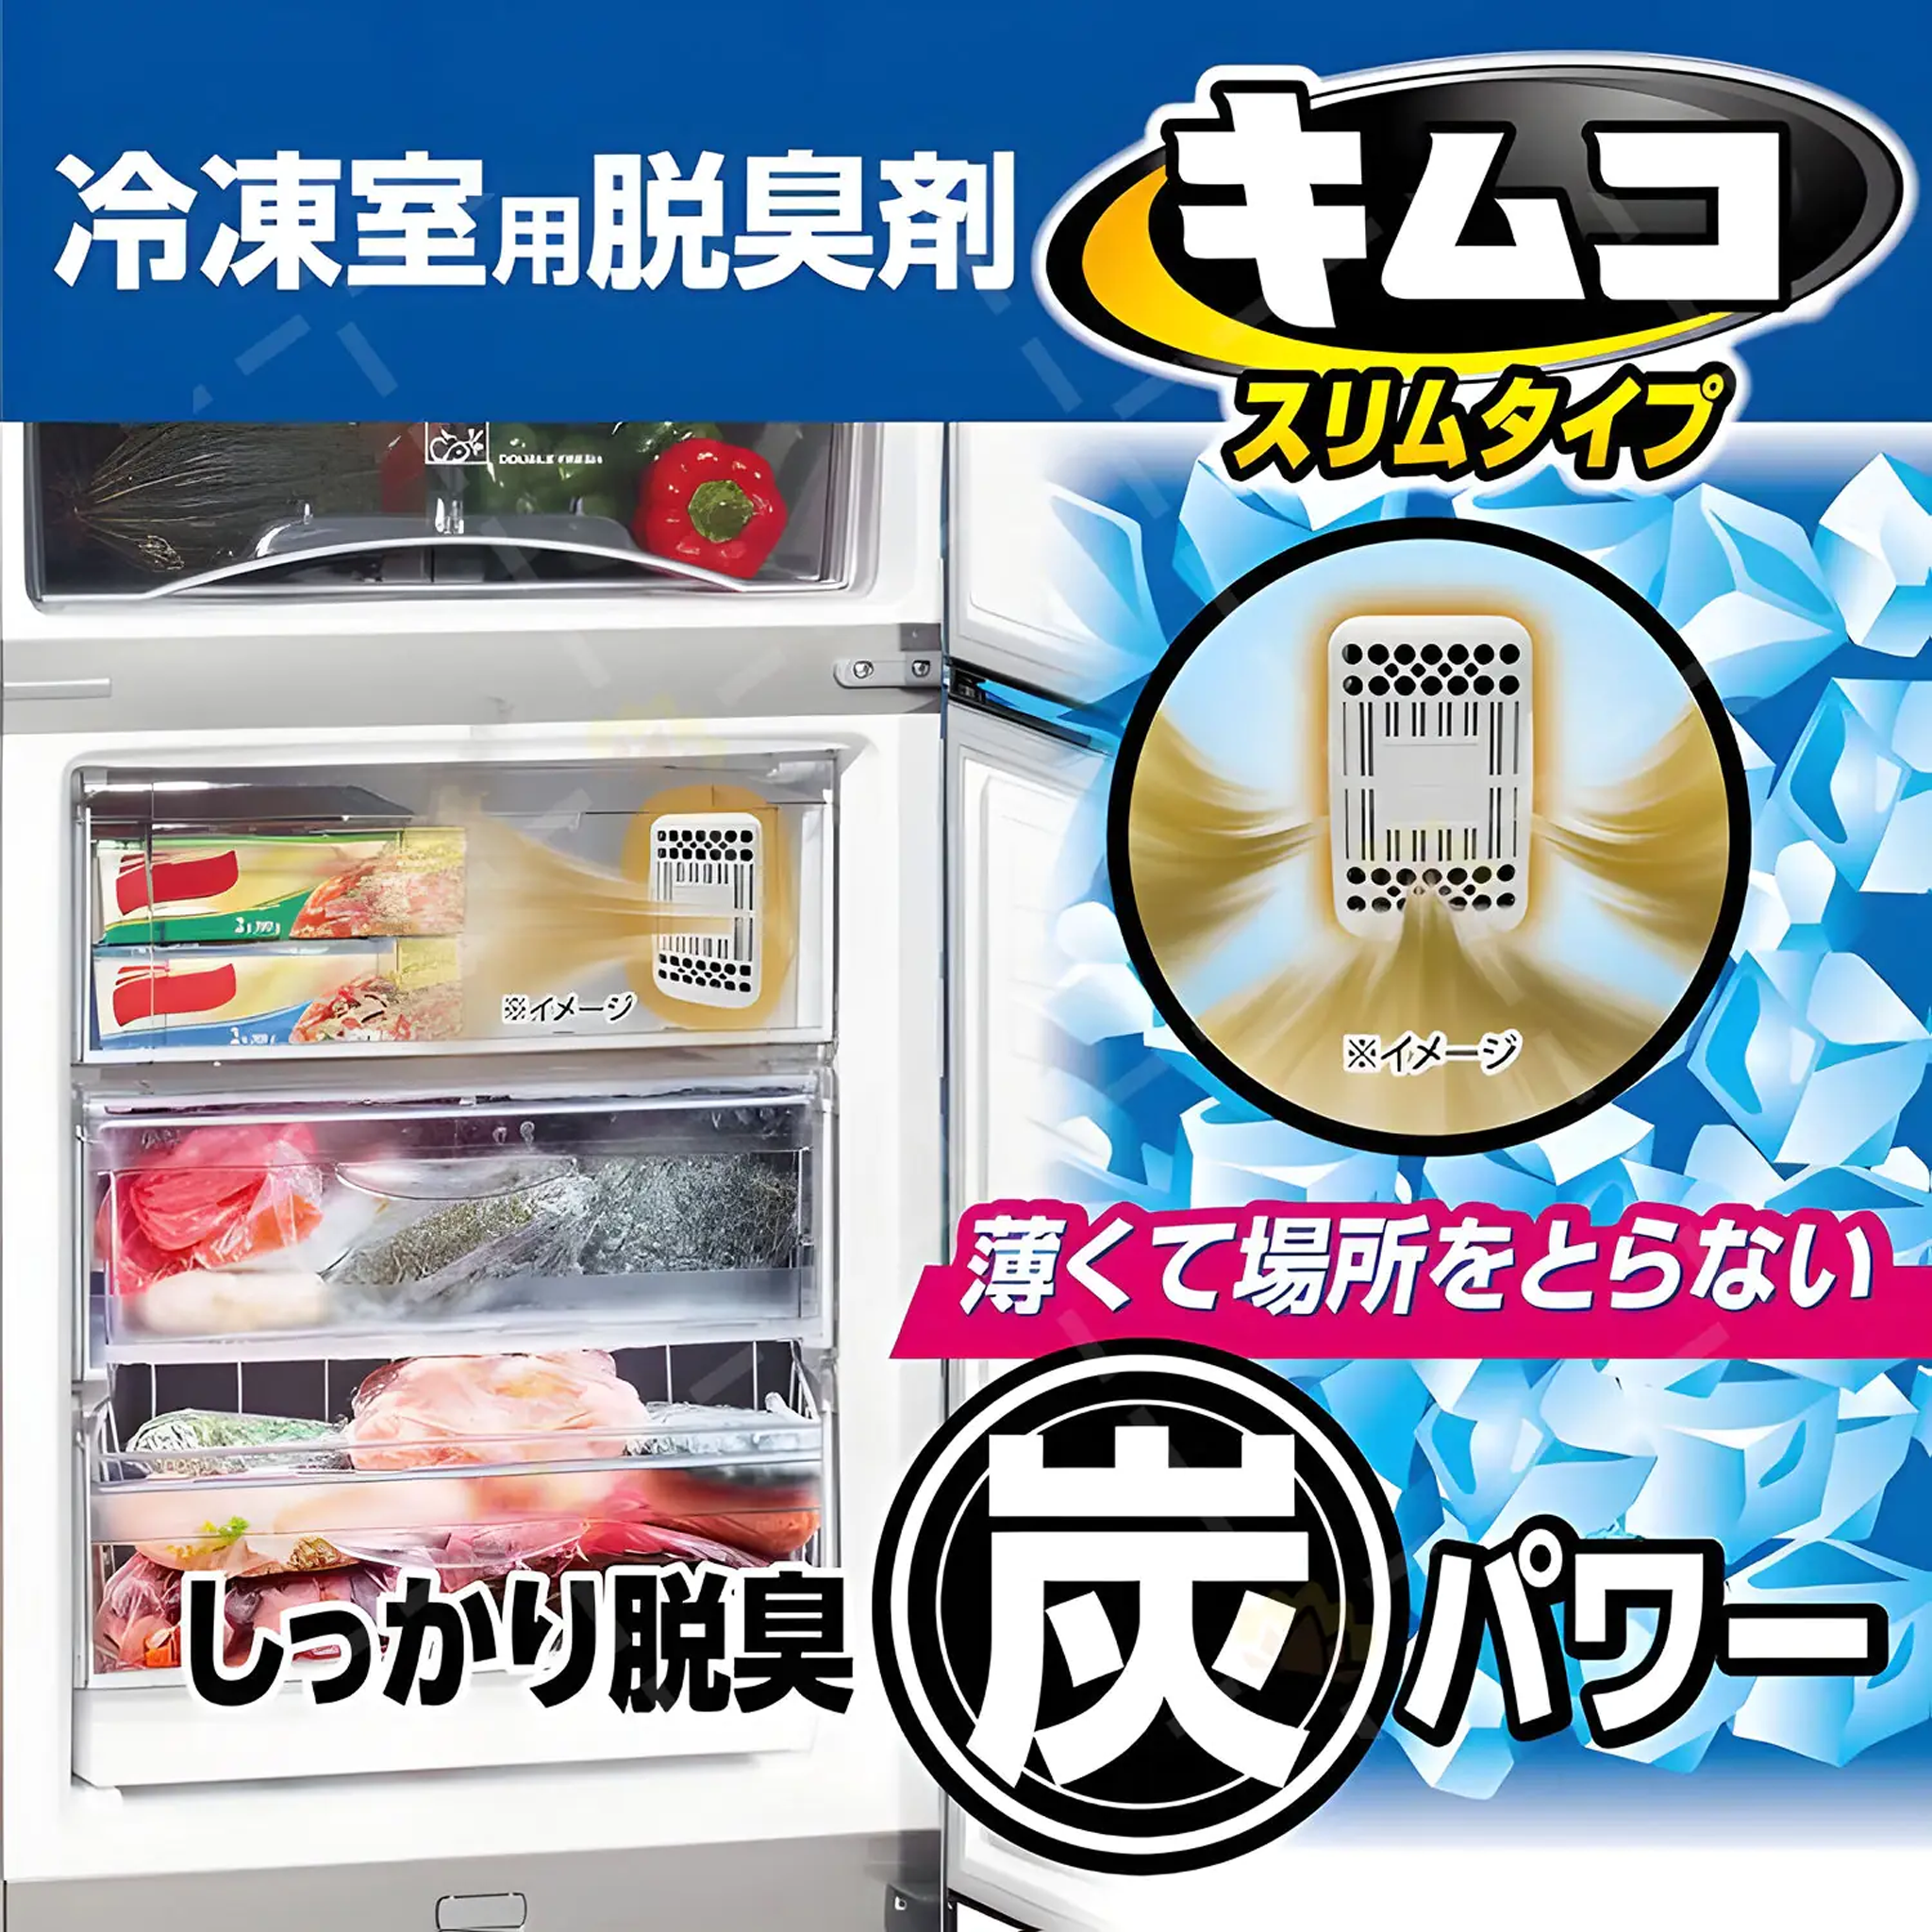 KOBAYASHI Kimco Refrigerator Deodorizer for Freezer Compartment 40g